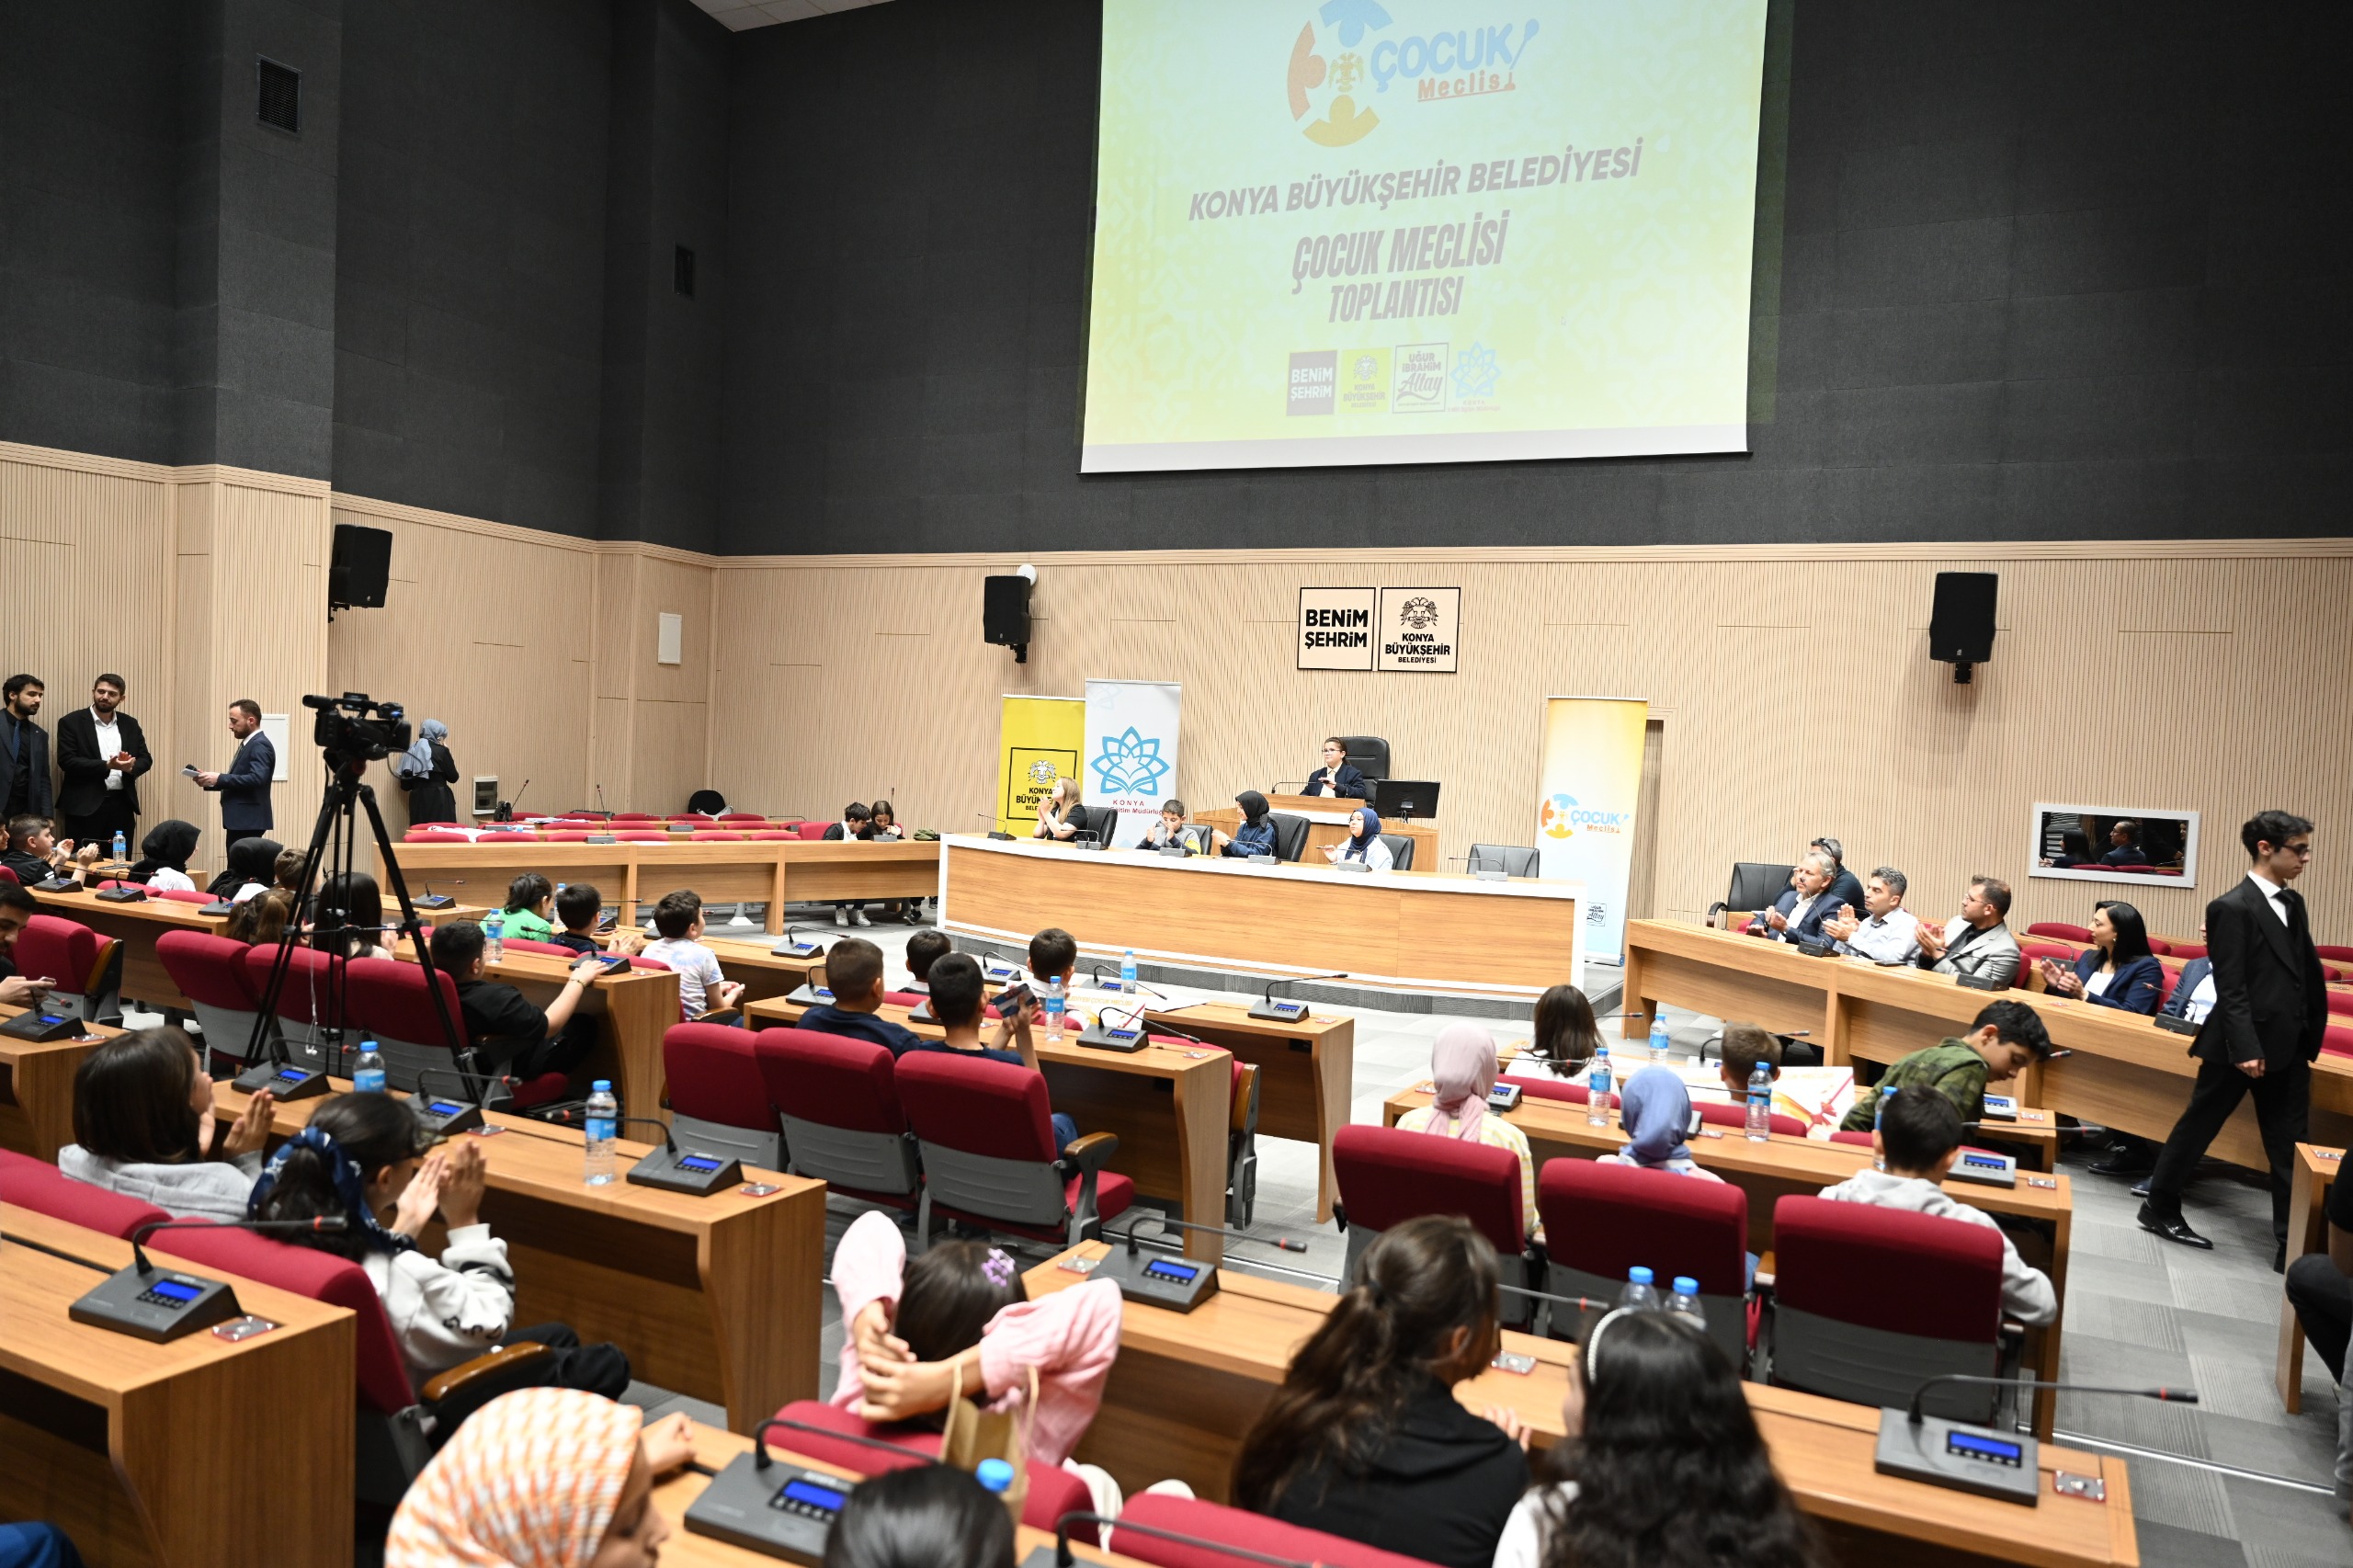 Konya Büyükşehir Belediyesi Çocuk Meclisi dönemin son toplantısını gerçekleştirdi